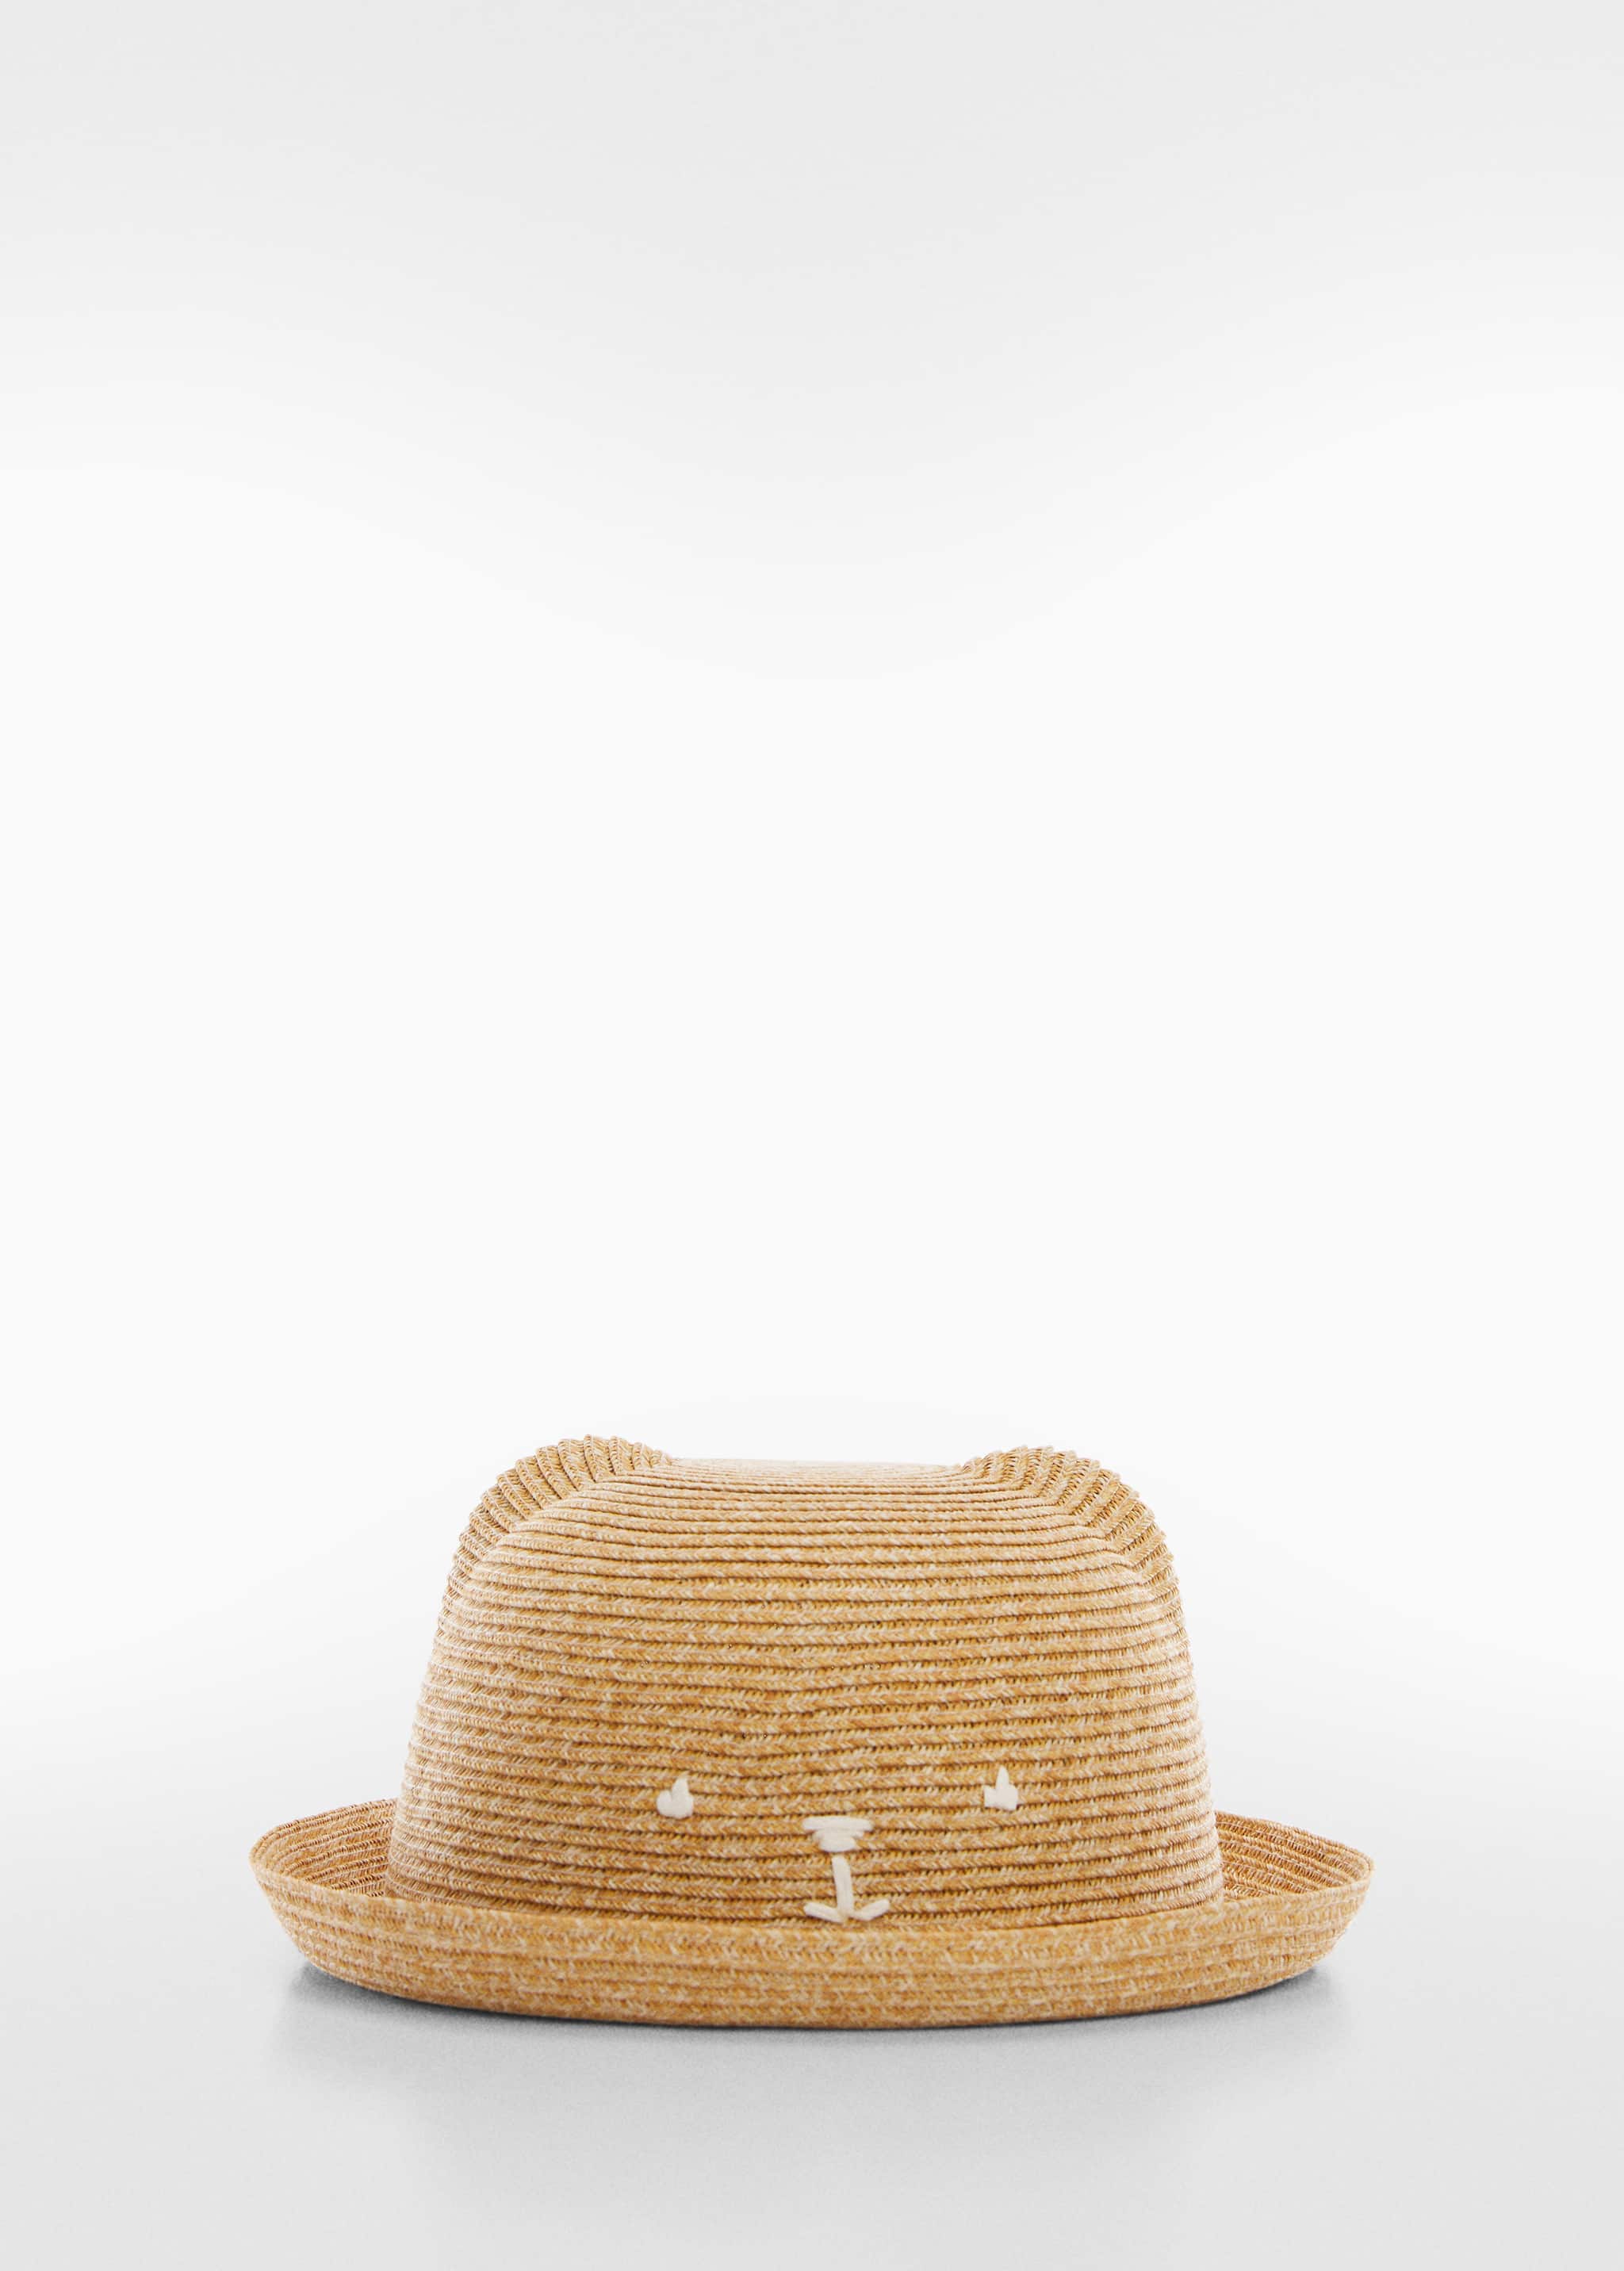 Соломенная шляпа с ушками - Изделие без модели